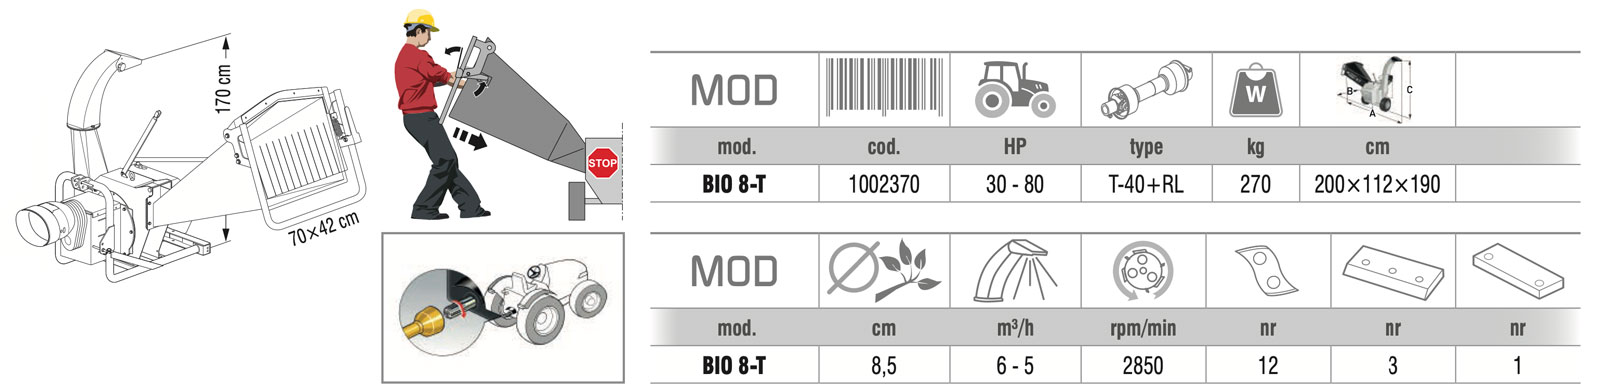 caratteristiche biotrituratore per trattori, zanon bio8t